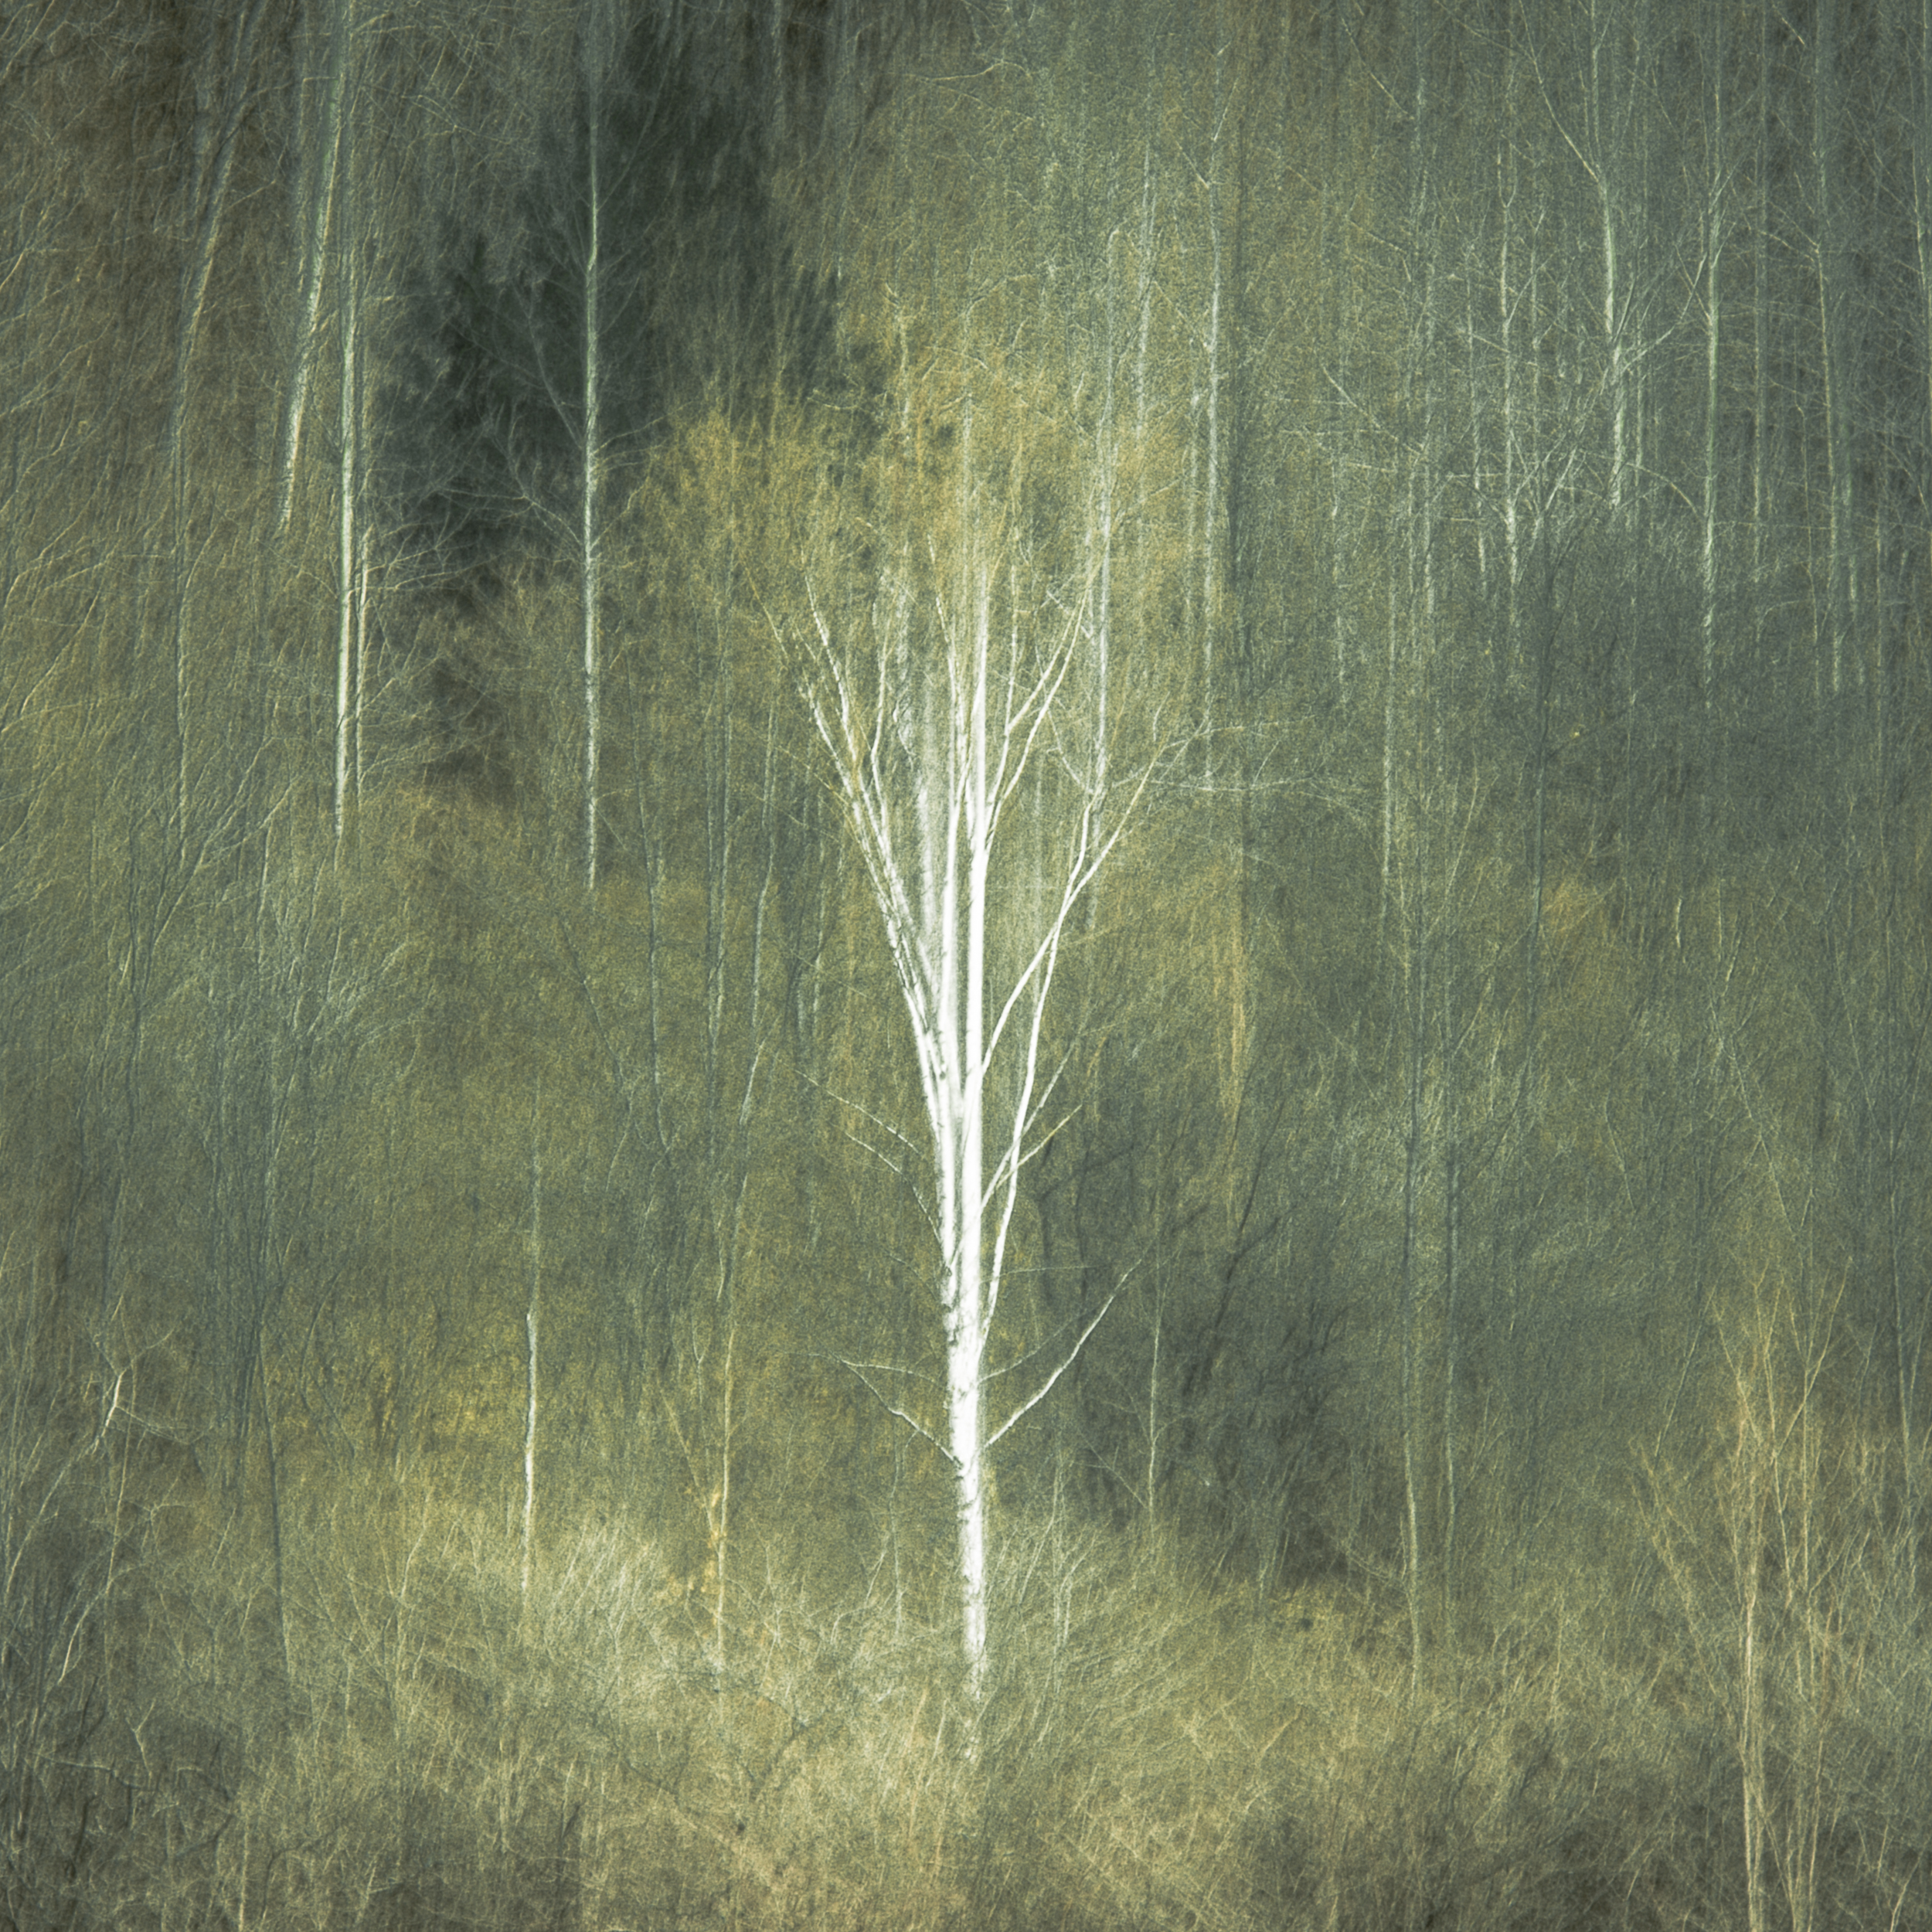 Candia Peterson ARPS - Lone Birch